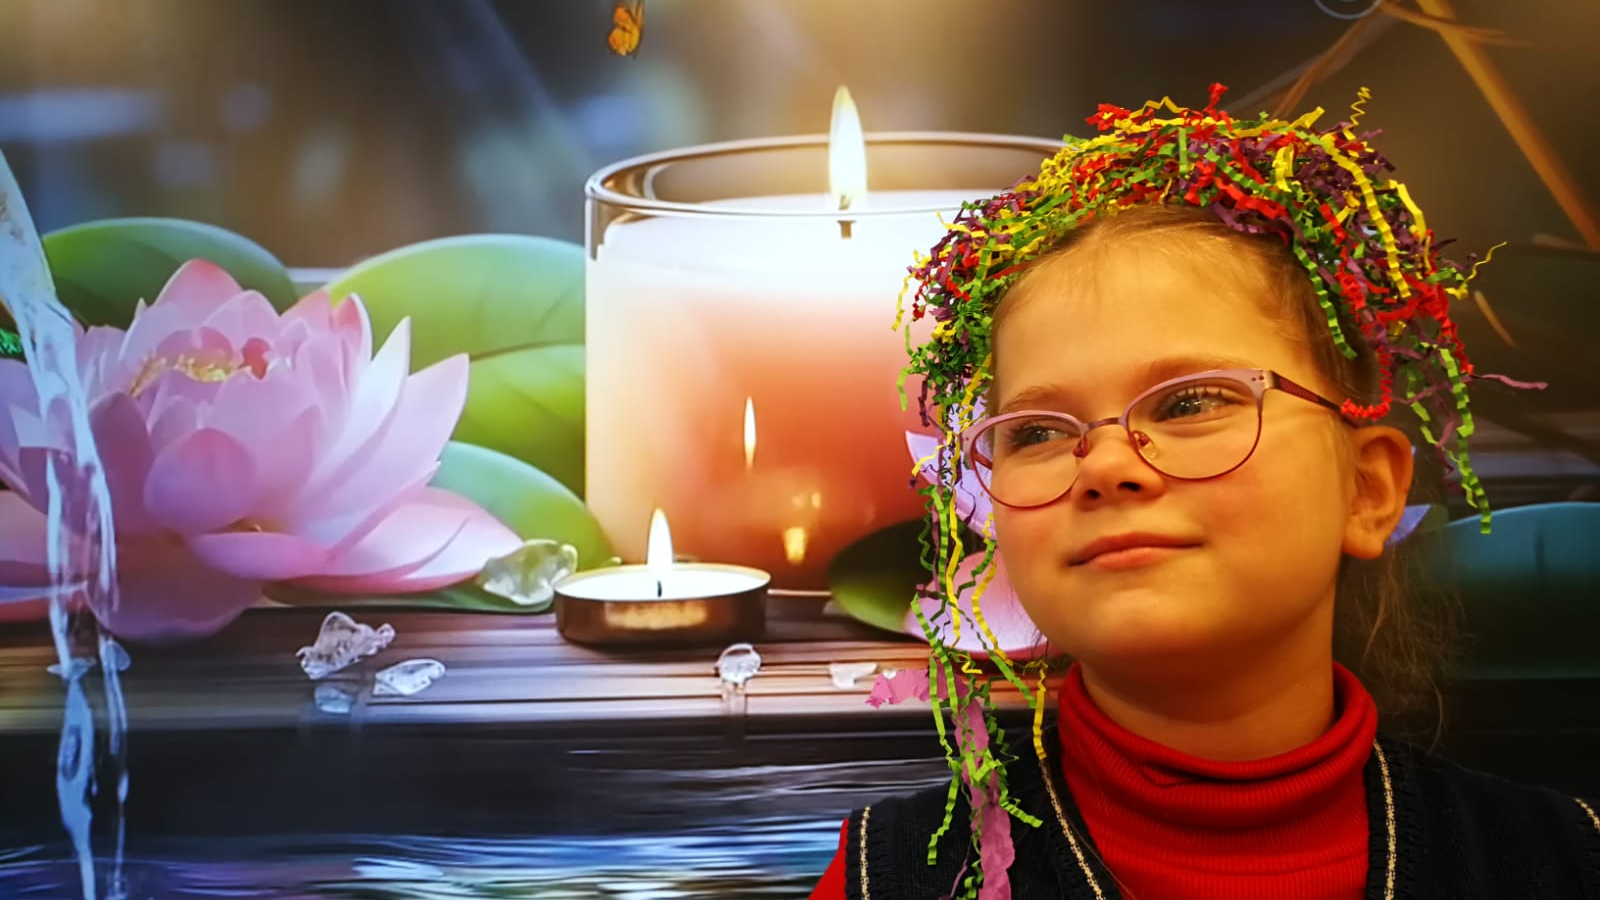 Meitene ar pašas darinātu gofrēta papīra sloksnīšu vainagu uz lotosa ziedu un sveču fototapetes fona